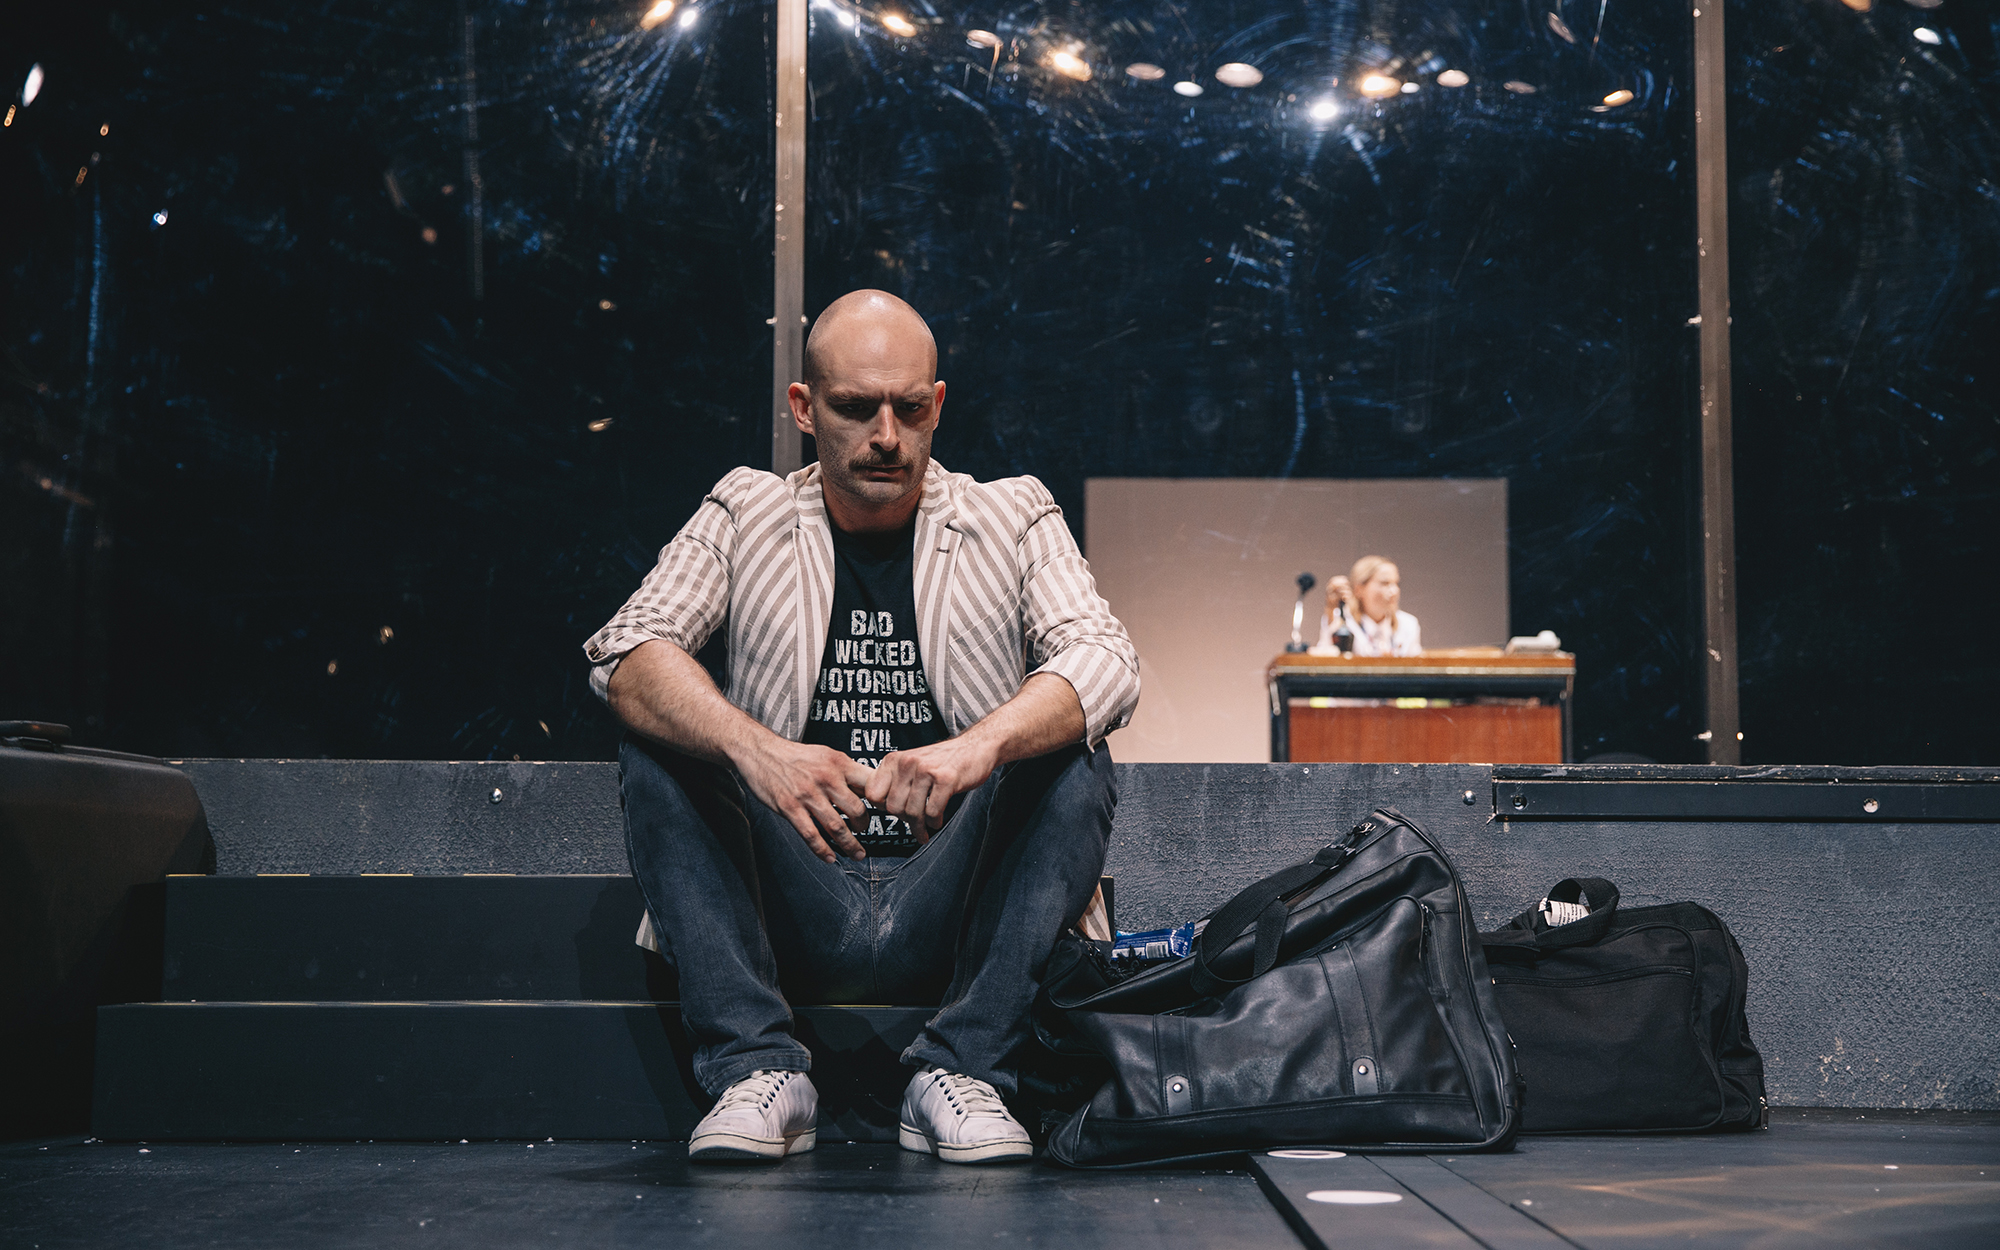 Toni (Gregor Gruden) sedi na stopnicah in zamišljeno gleda predse, ob njem sta dva kosa prtljage. V ozadju za stekleno steno je silhueta Cherie (Viktorija Bencik Emeršič), ki sedi za pisalno mizo. Avtor fotografije: Peter Giodani.